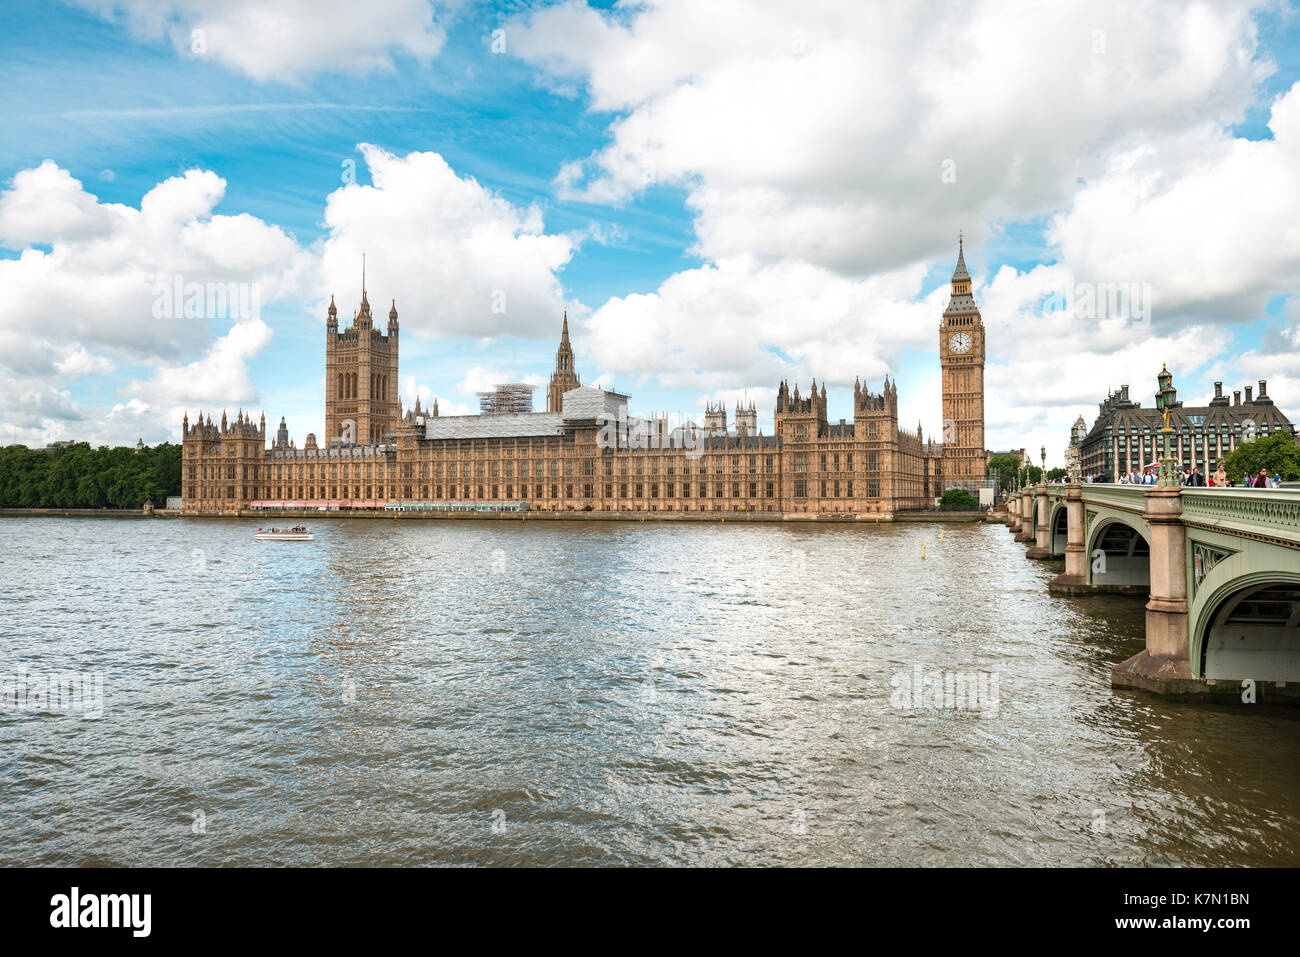 Palais de Westminster avec Big Ben, themse, Londres, Angleterre, Grande-Bretagne Banque D'Images